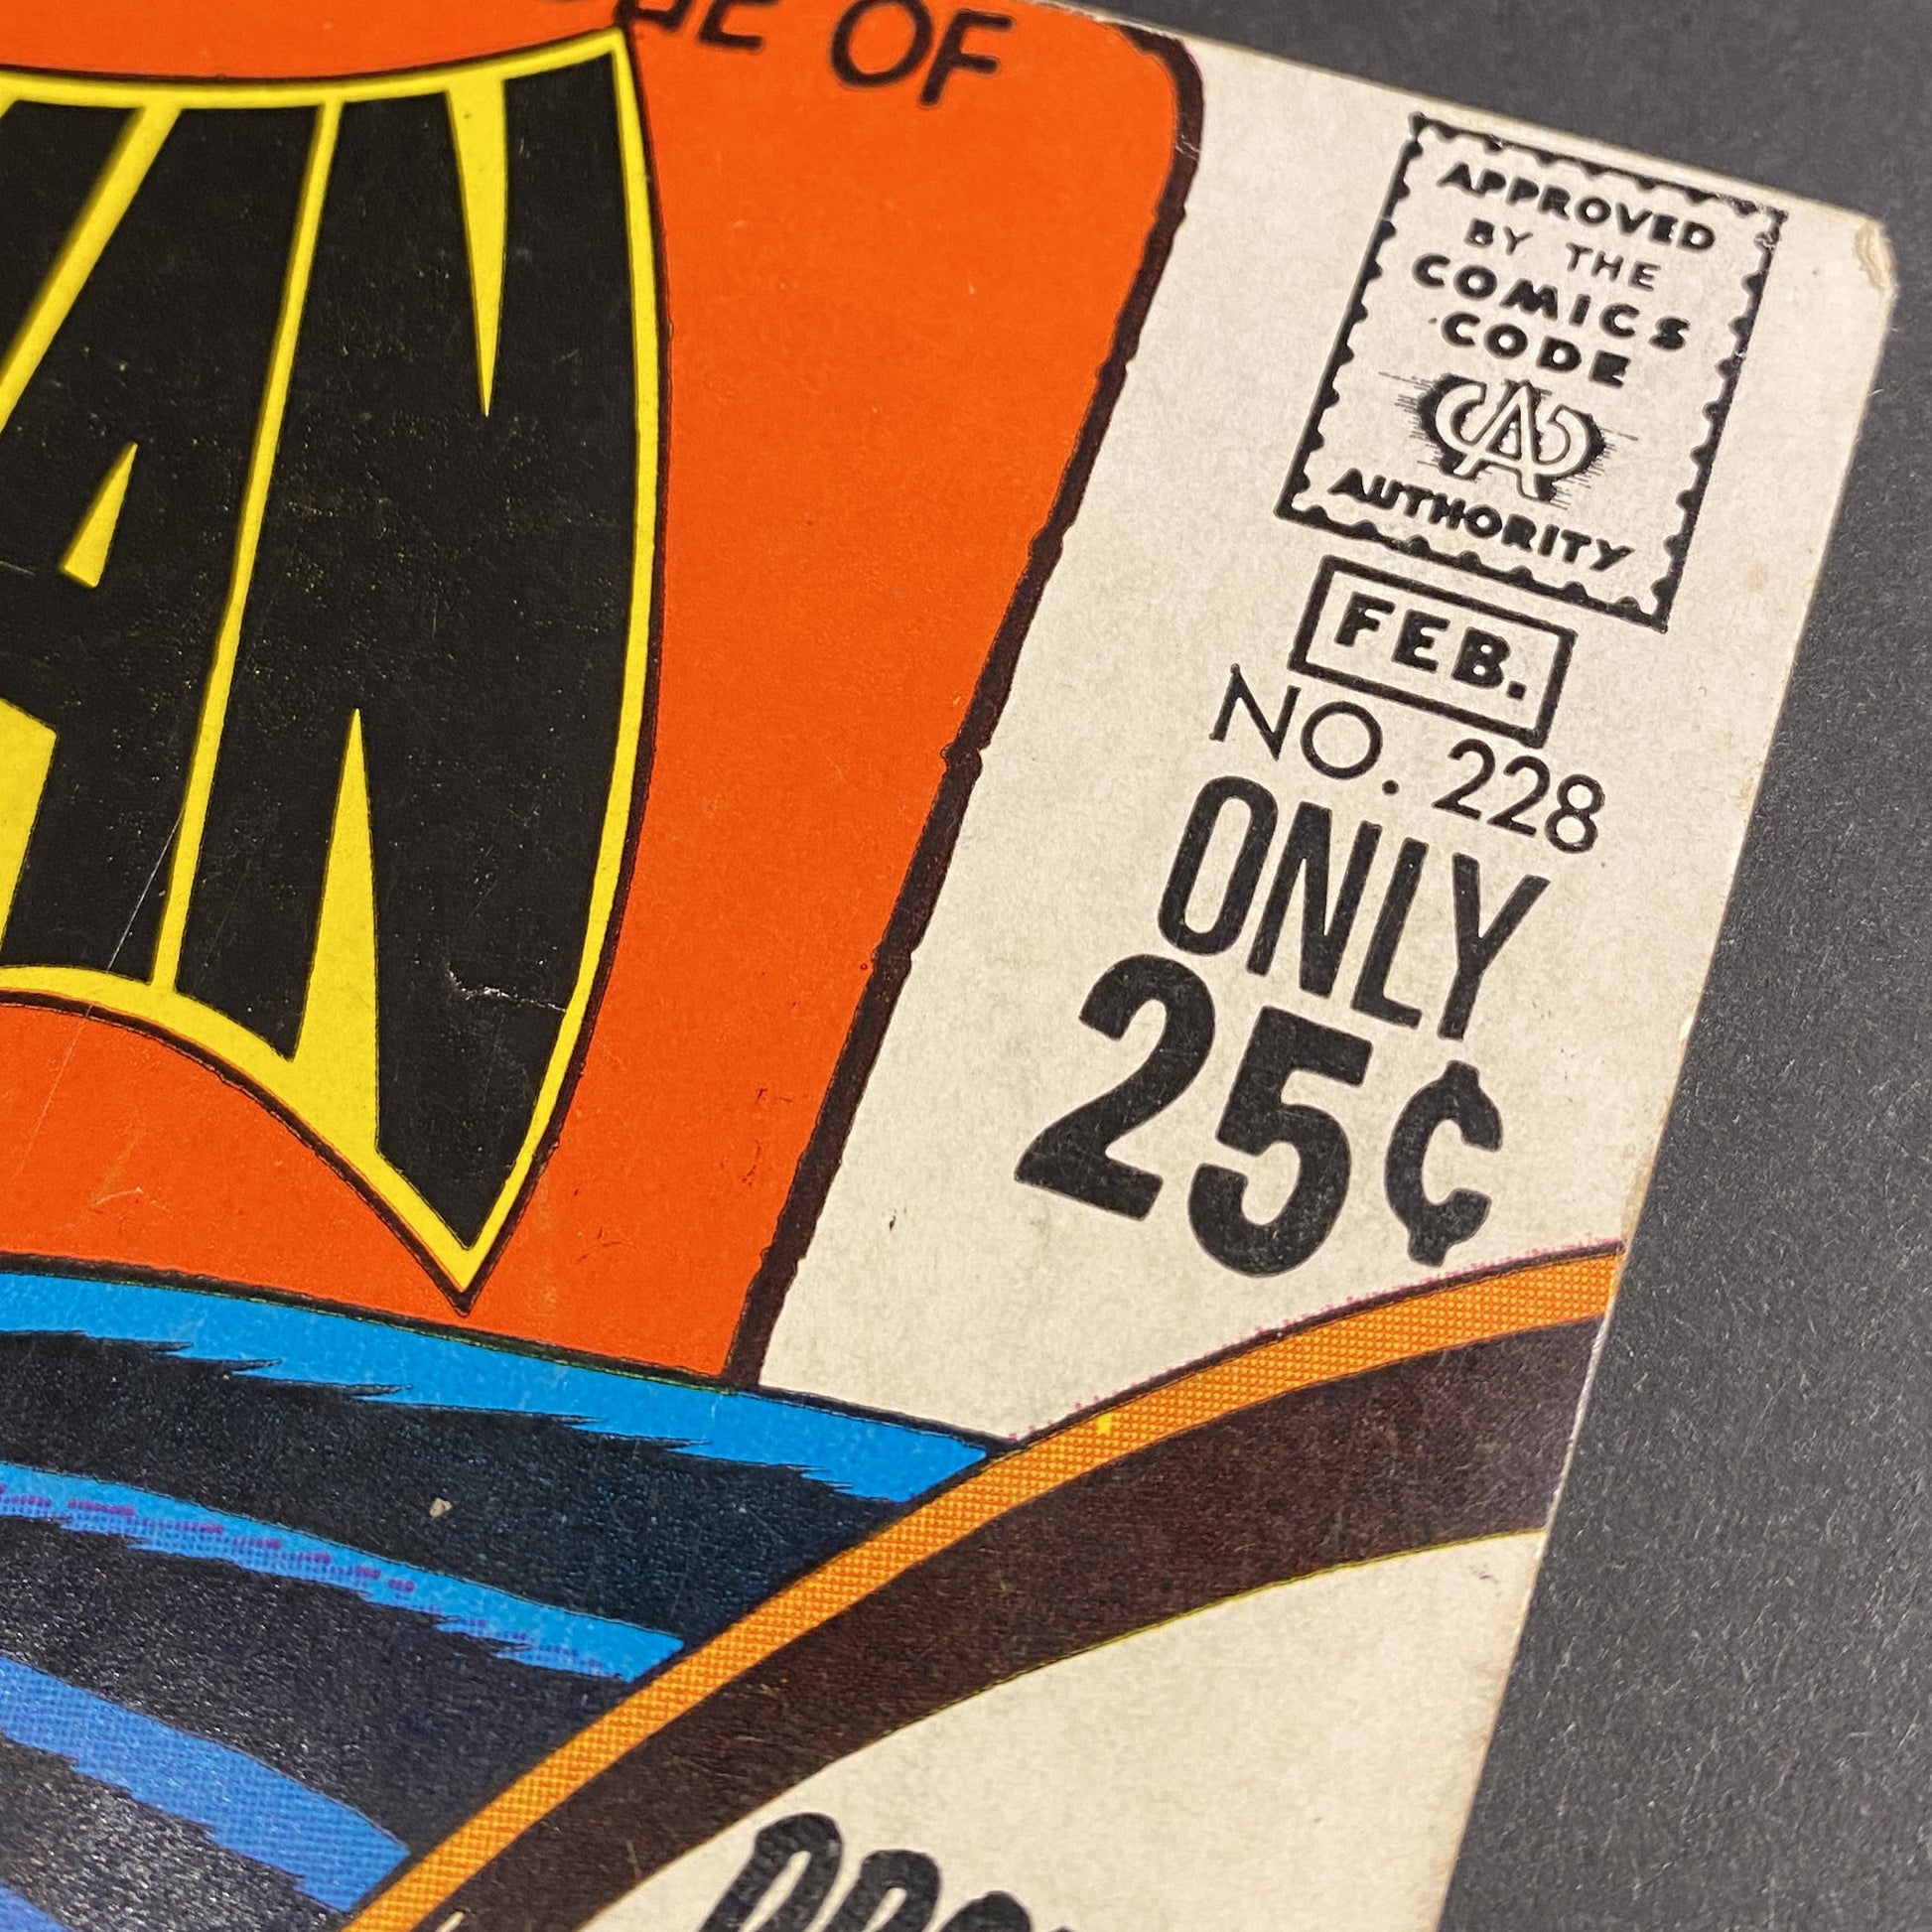 batman 228 from DC comics